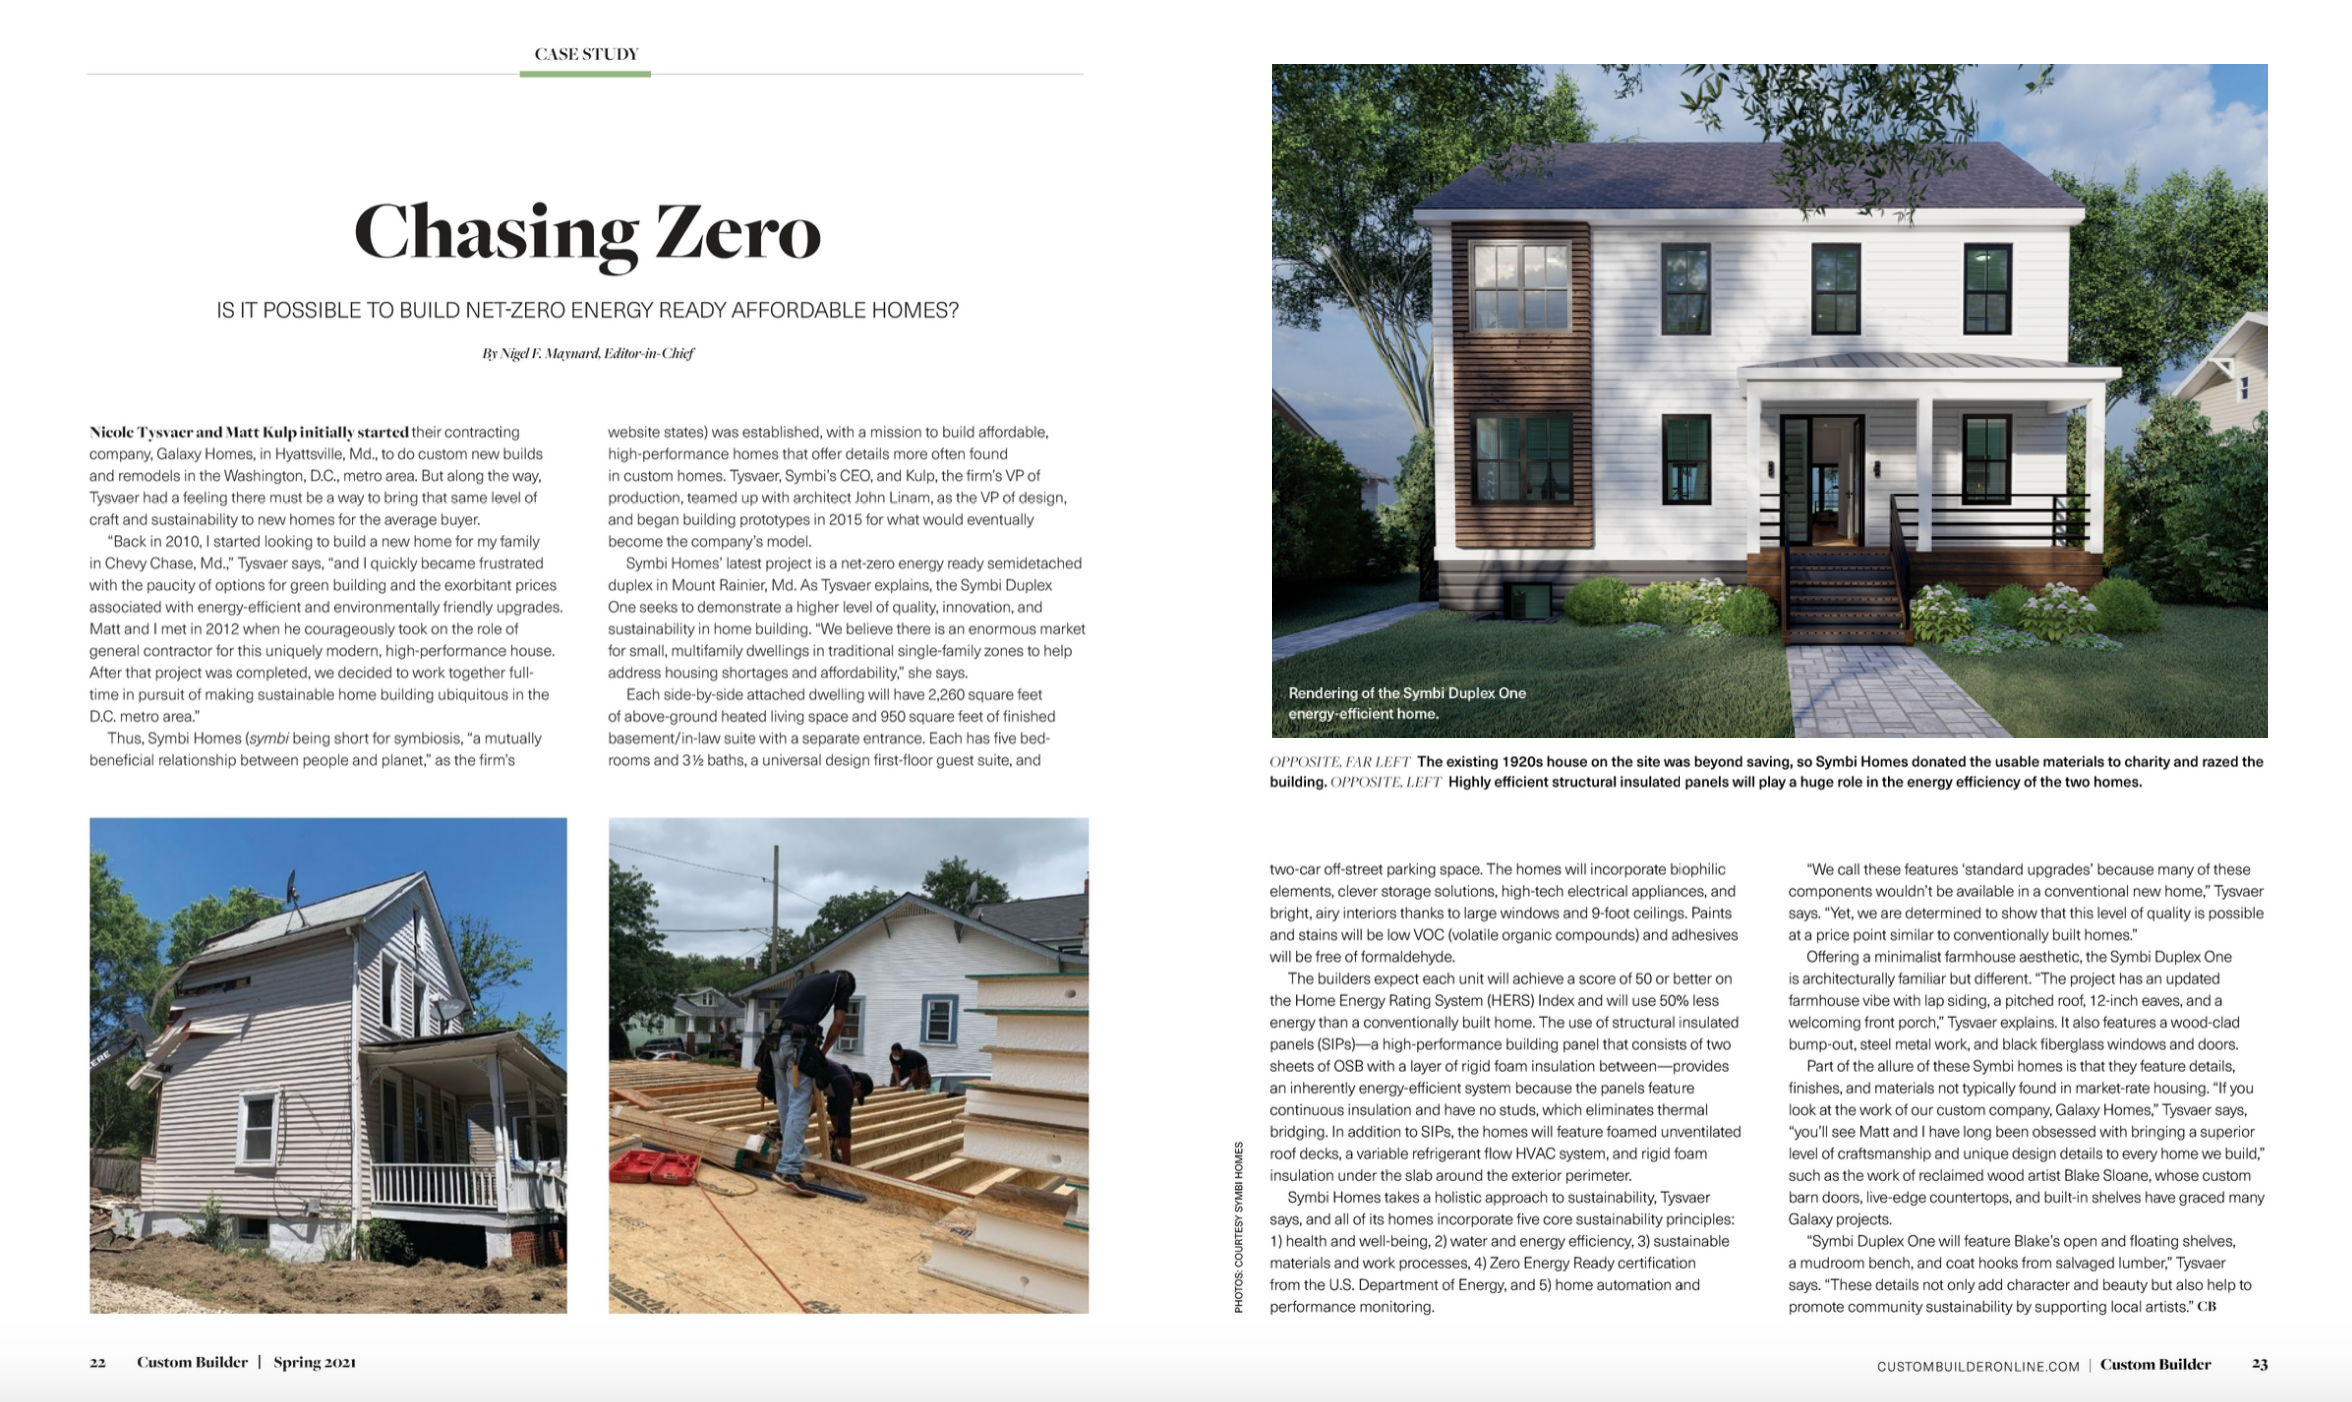 Chasing Zero - Custom Builder Magazine